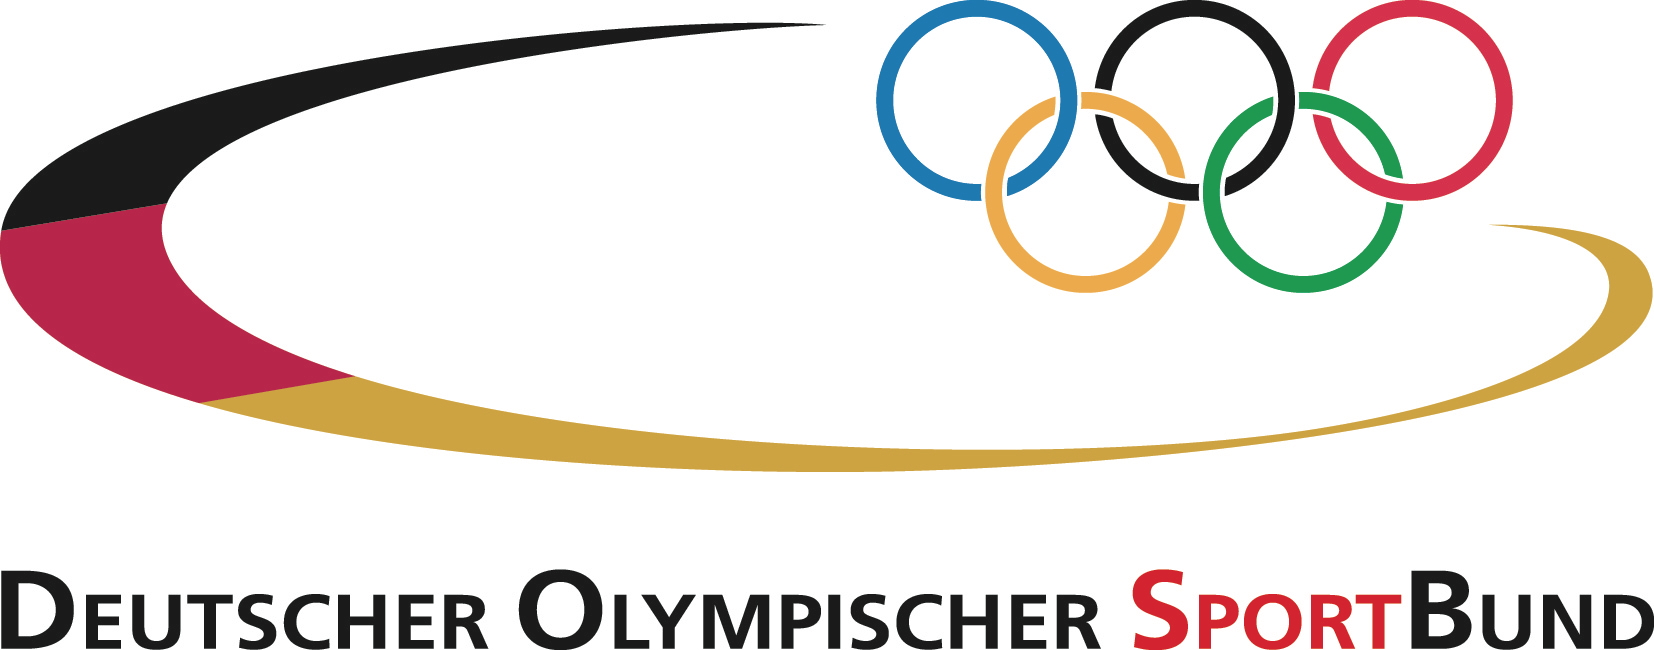 Deutsche-Politik-News.de | Deutscher Olympischer SportBund (DOSB)